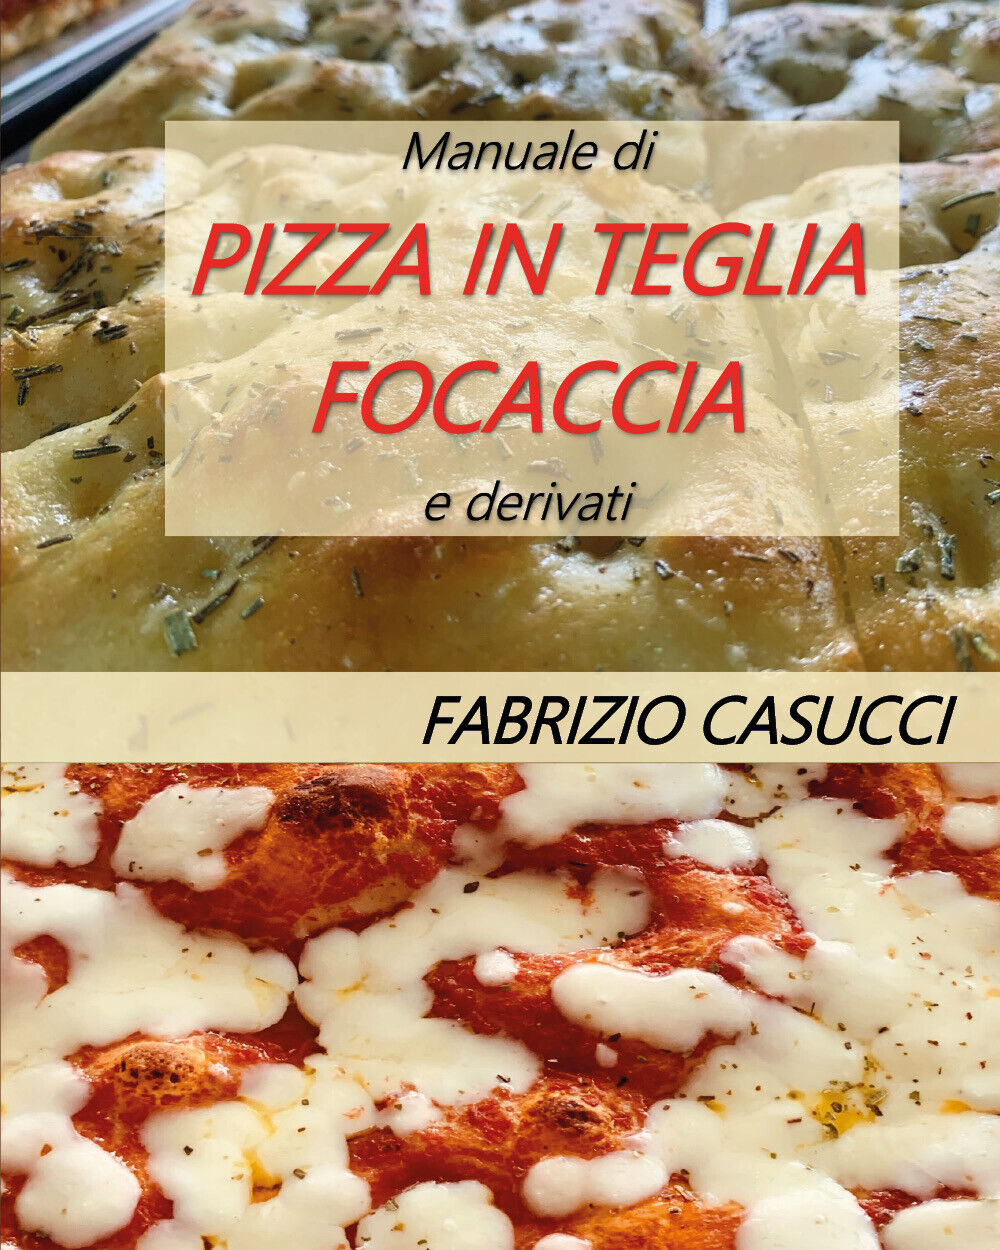 Manuale di pizza in teglia focaccia e derivati - Fabrizio Casucci - 2020 libro usato